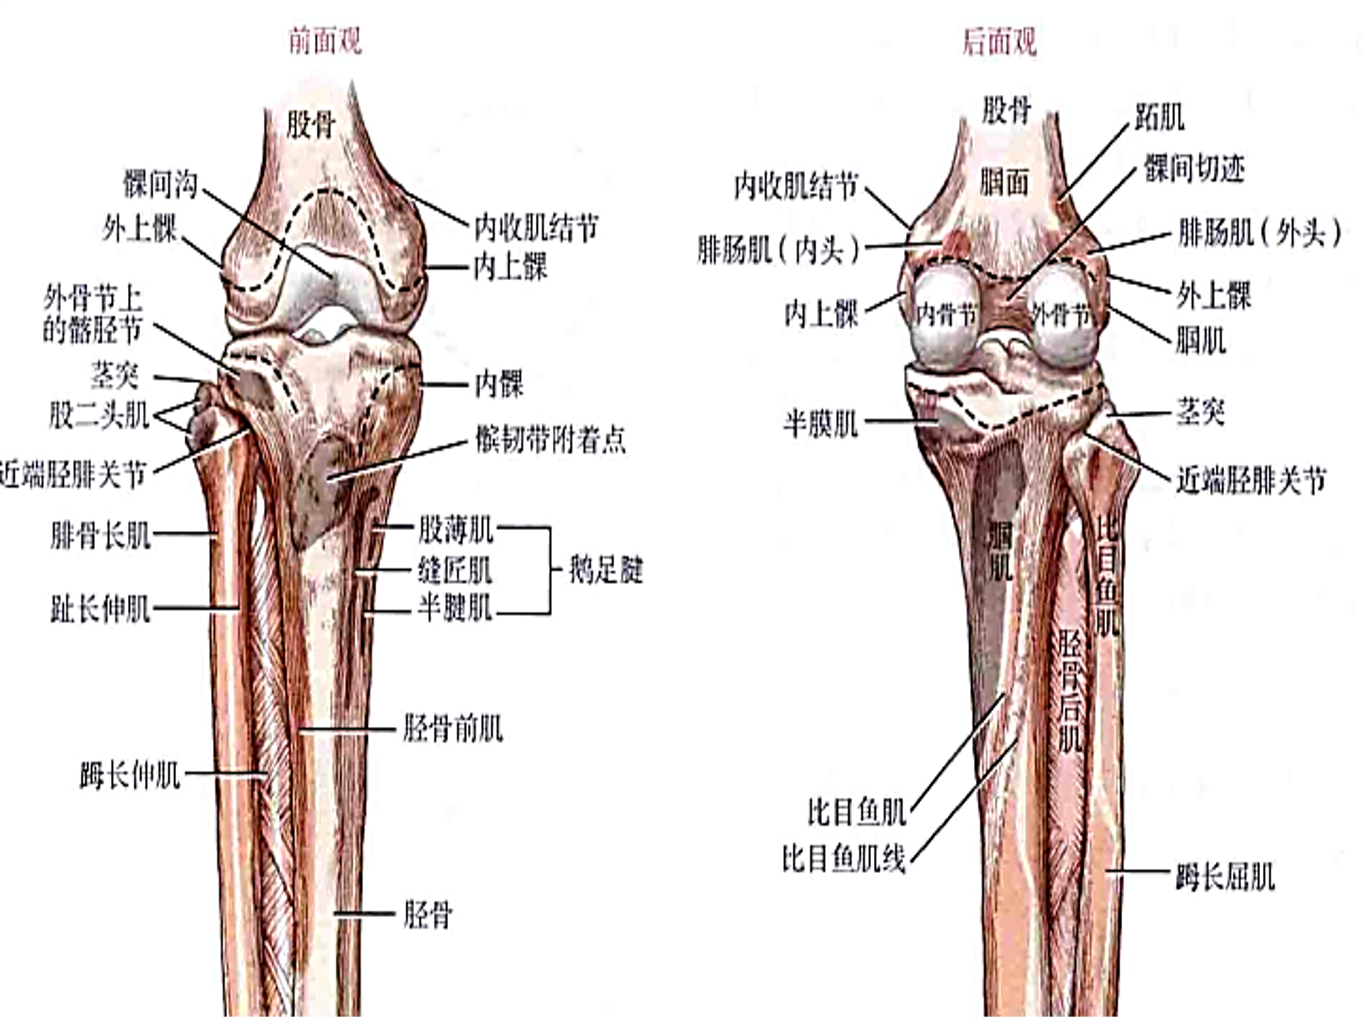 触诊胫骨内侧髁 体位:受检者仰卧 1,拇指扪及膝前的髌骨 2,拇指向内